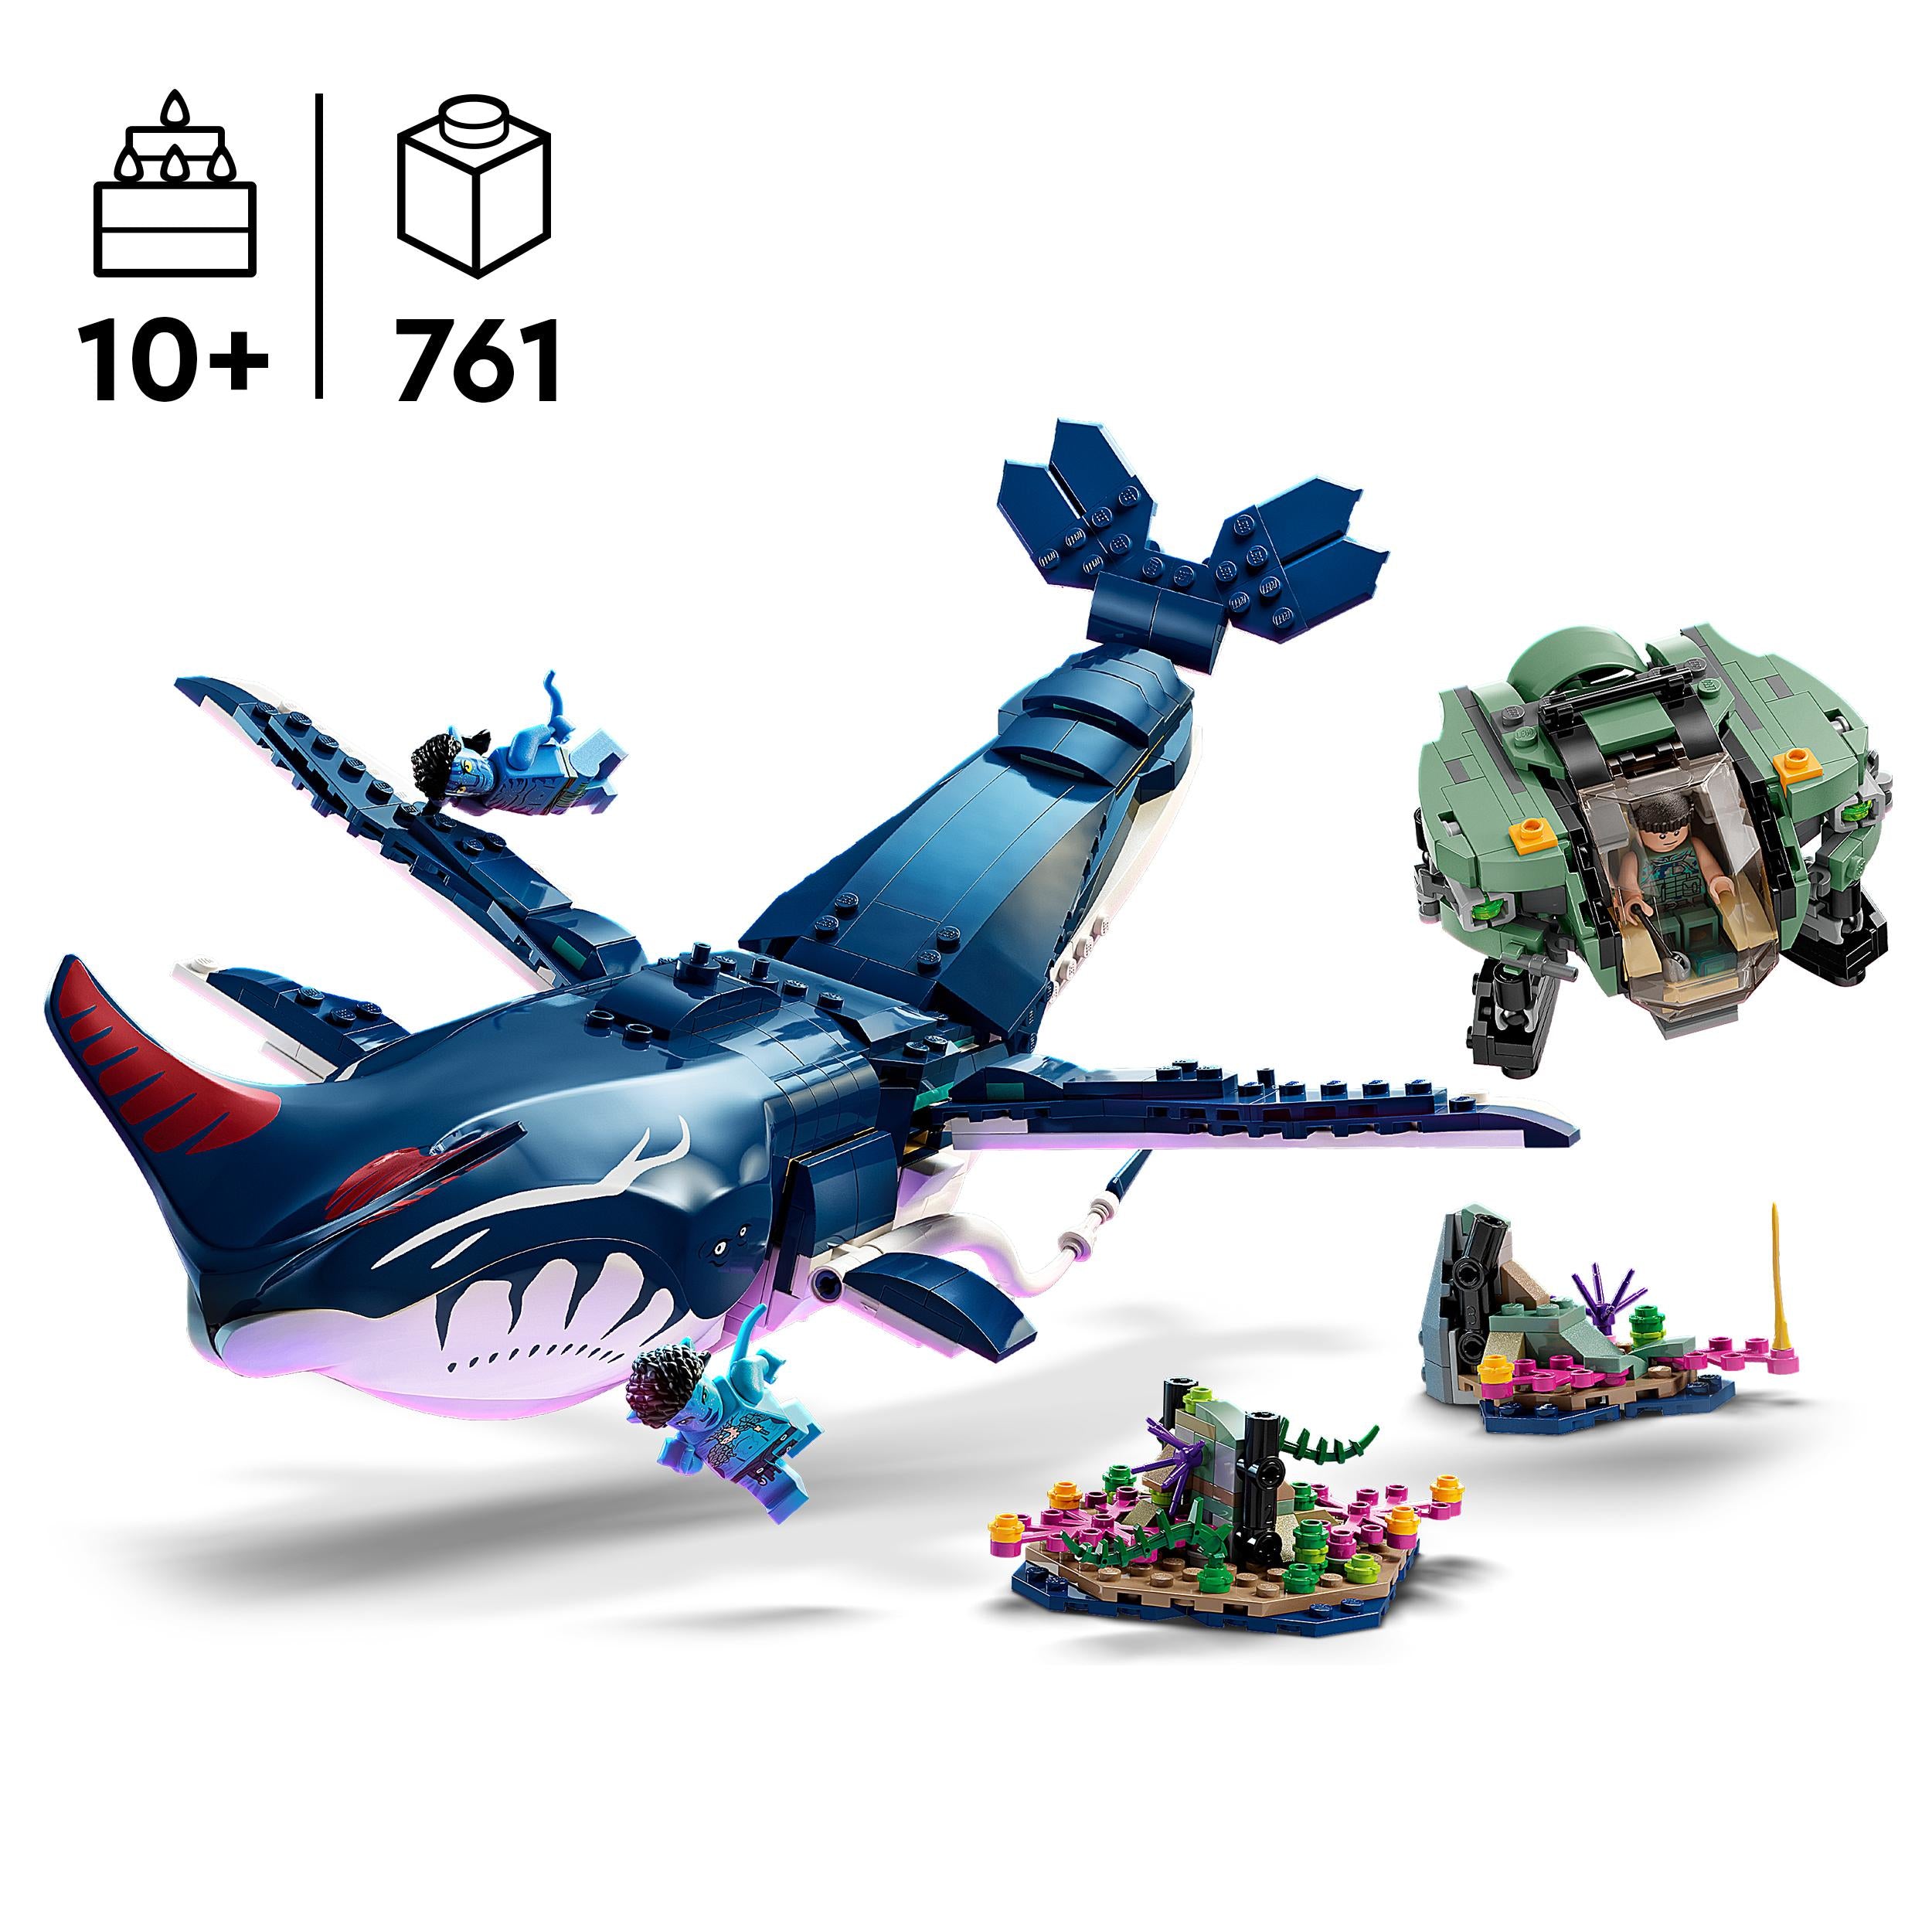 75579 LEGO Avatar - Tulkun Payakan e Crabsuit